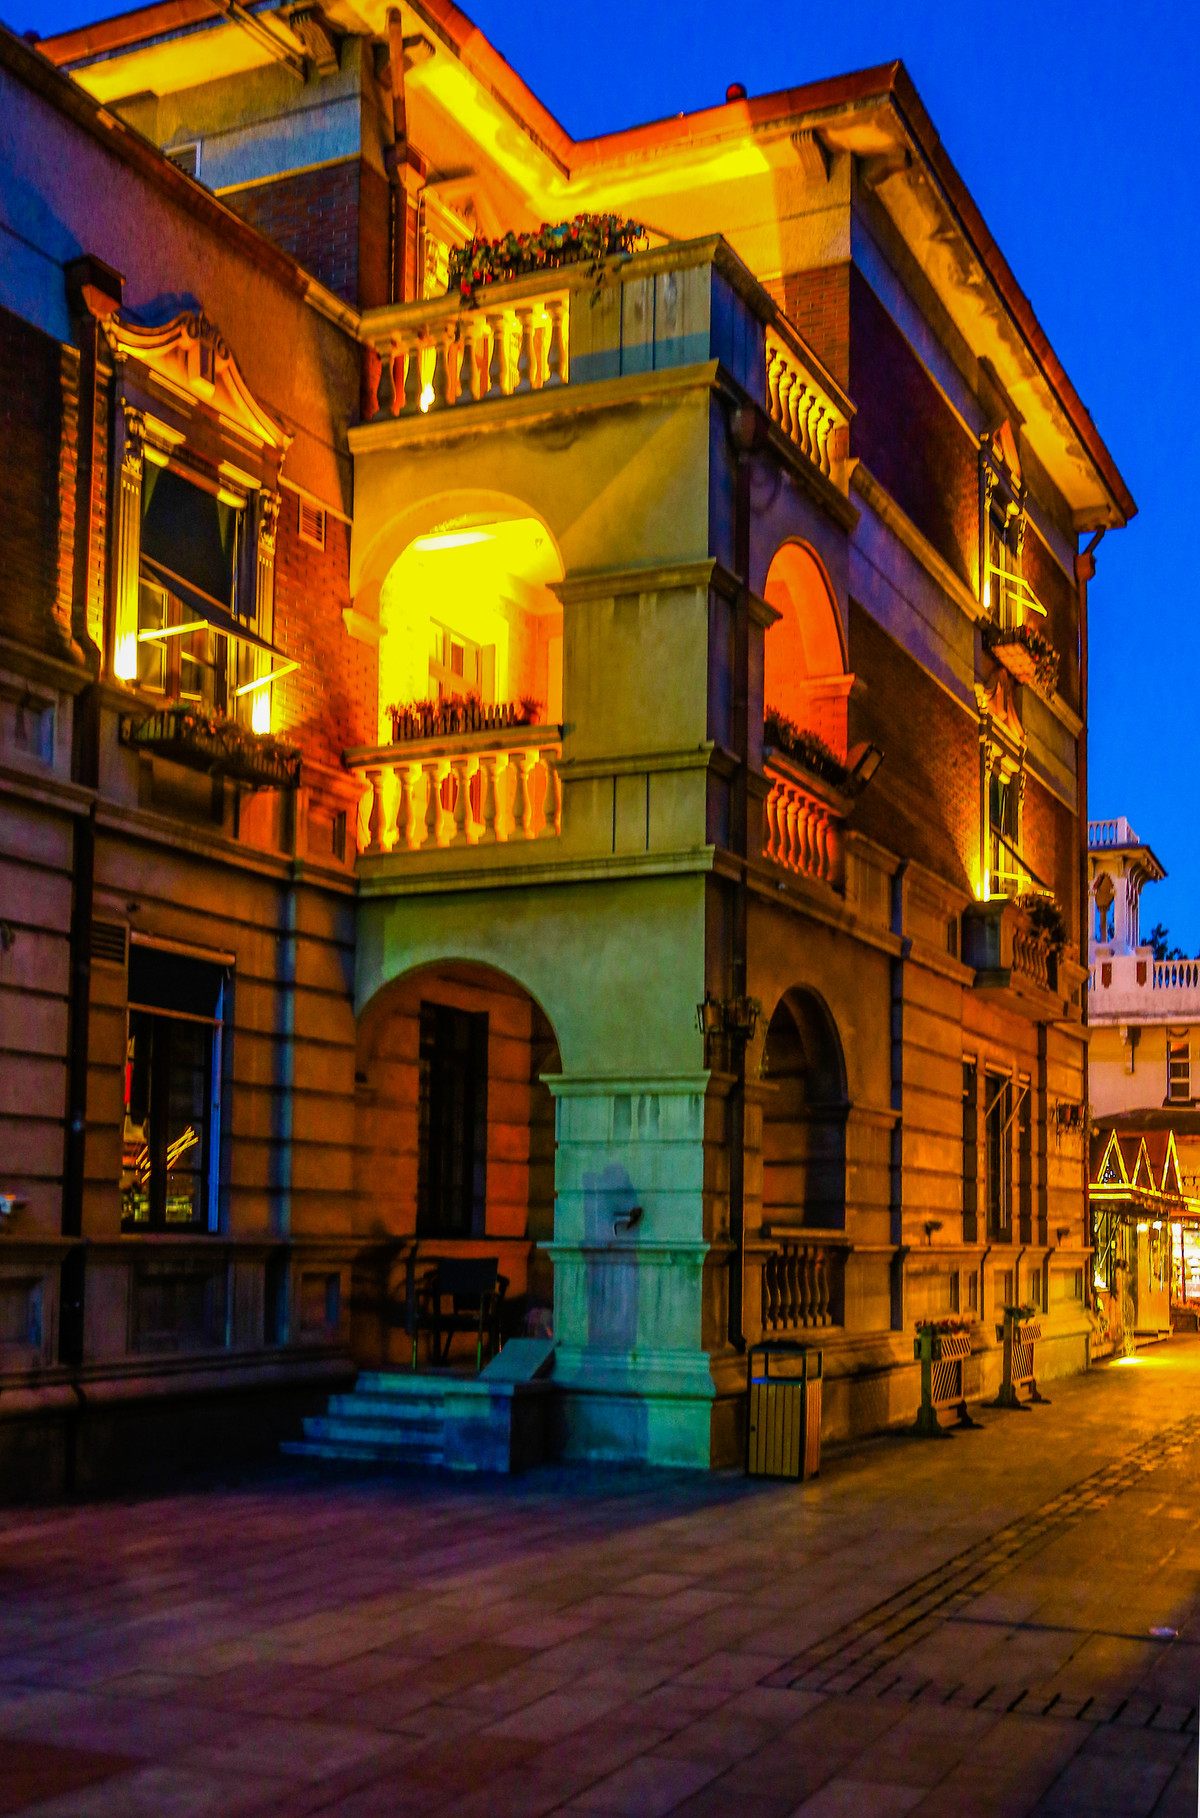 意大利风情街 夜景图片